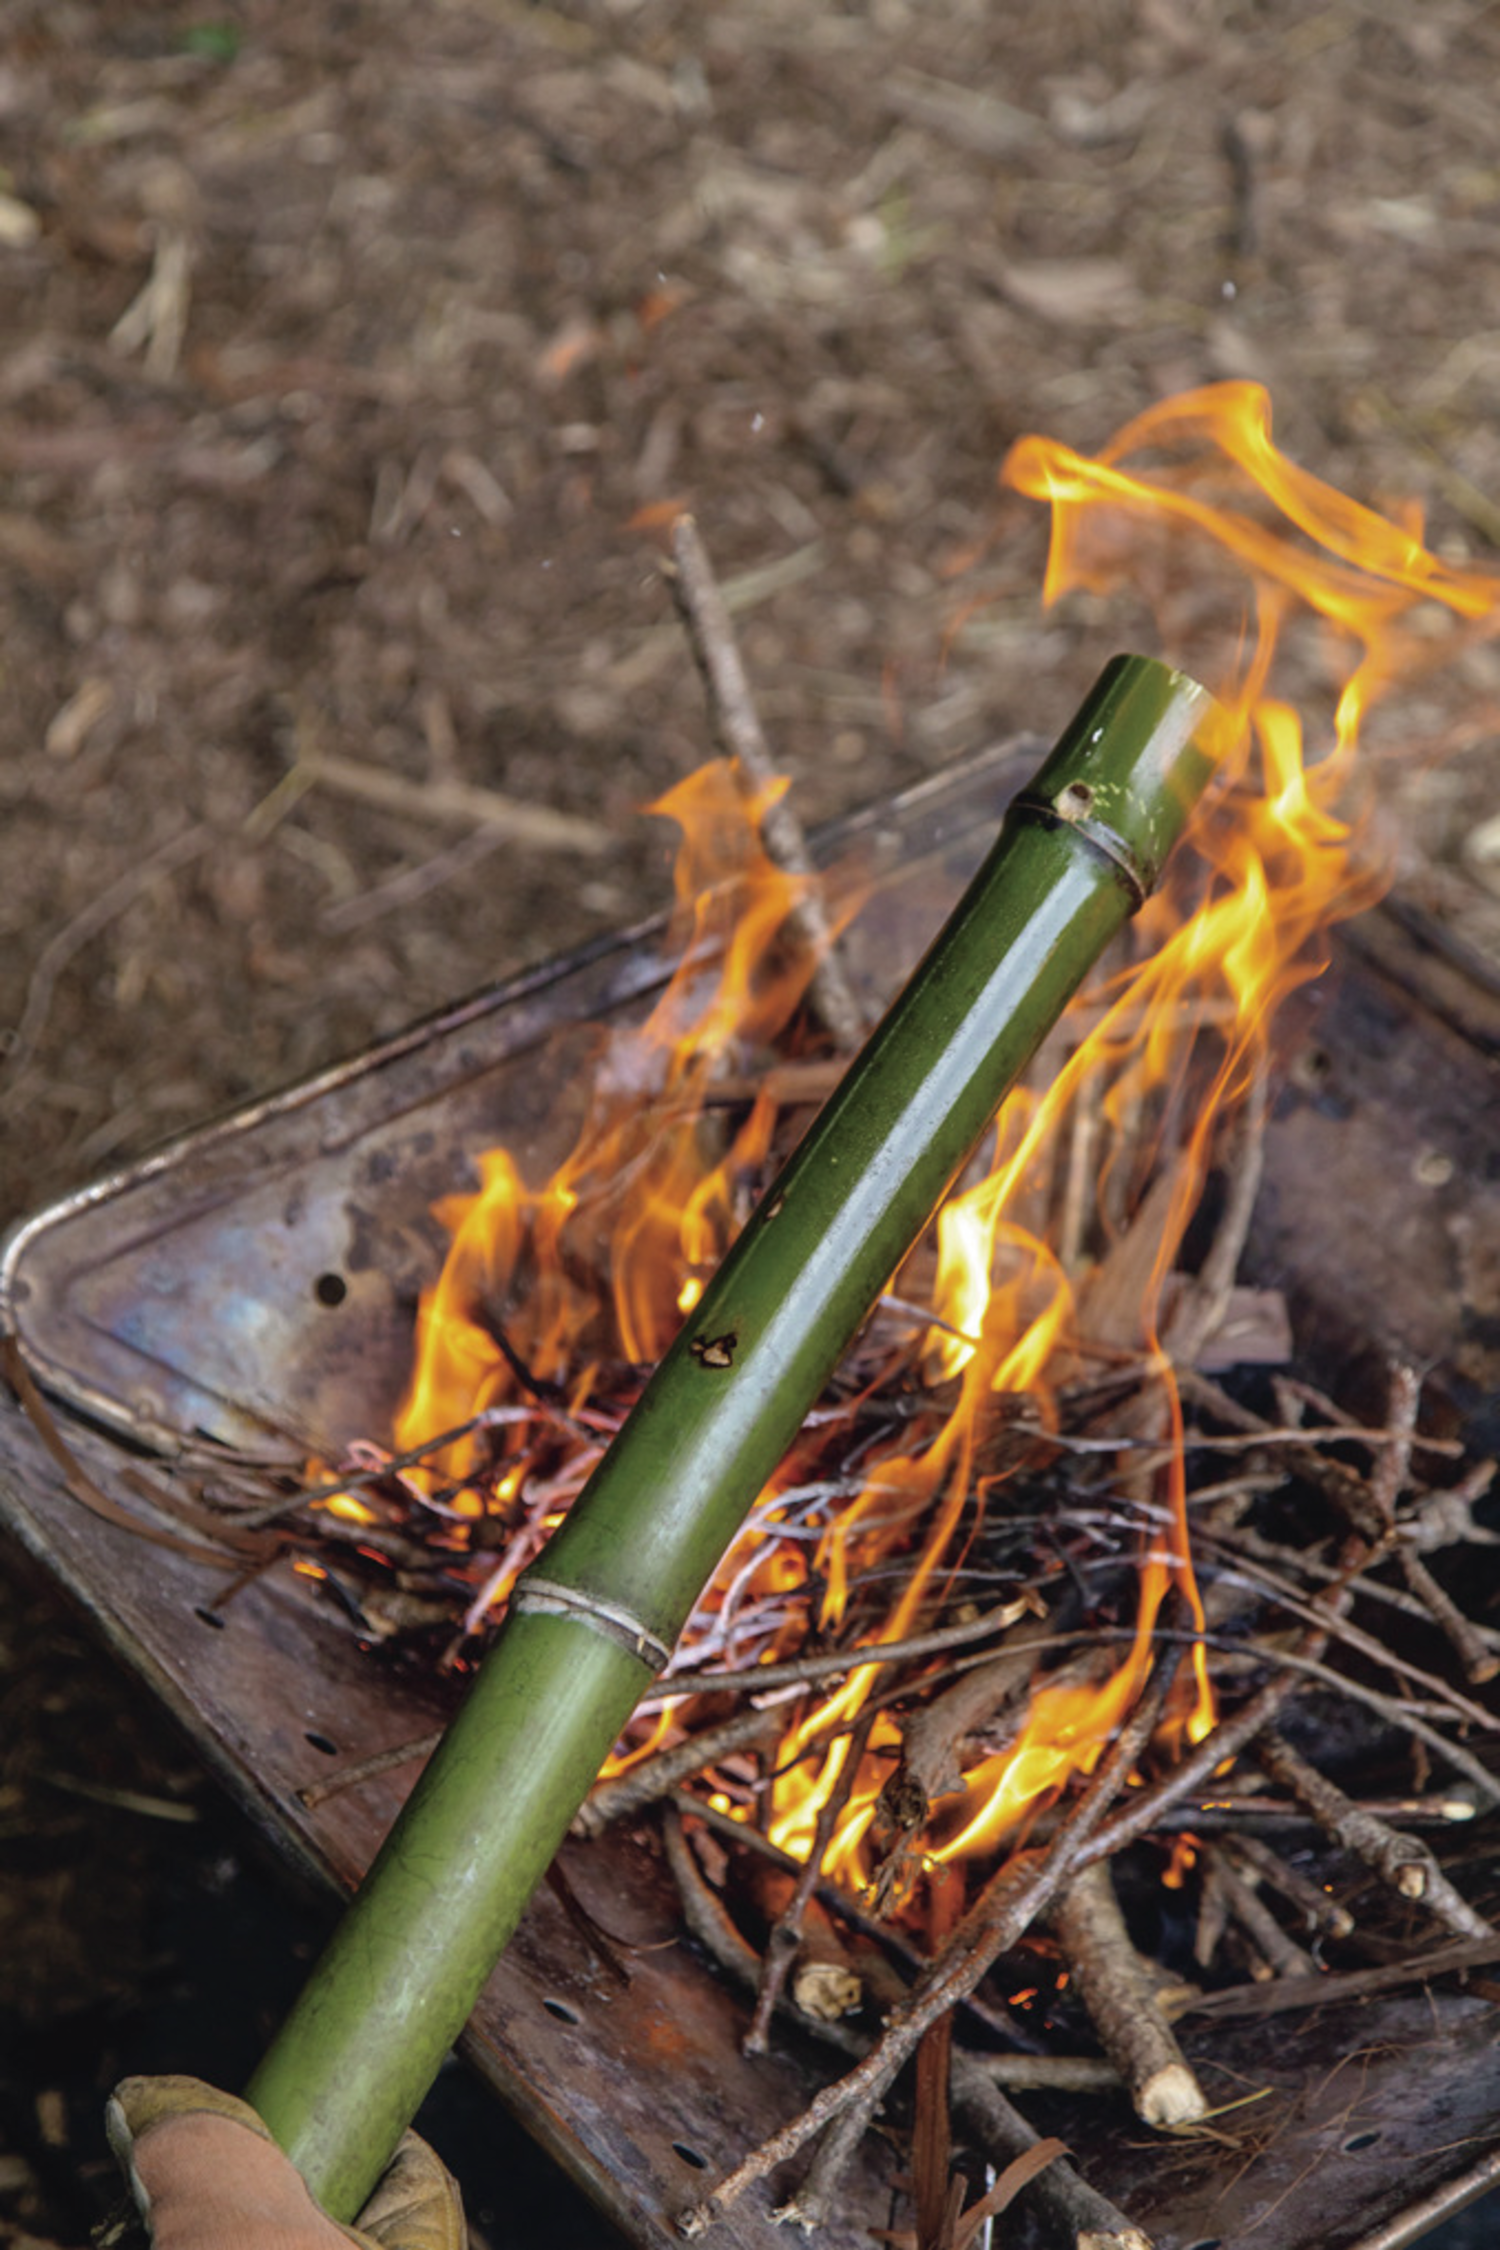 優先配送 火起こし道具 木で火起こし ファイヤースターターツール 木材ボーリング 原始体験 アウトドア 弓切り式竹 弓弦ハンドル 